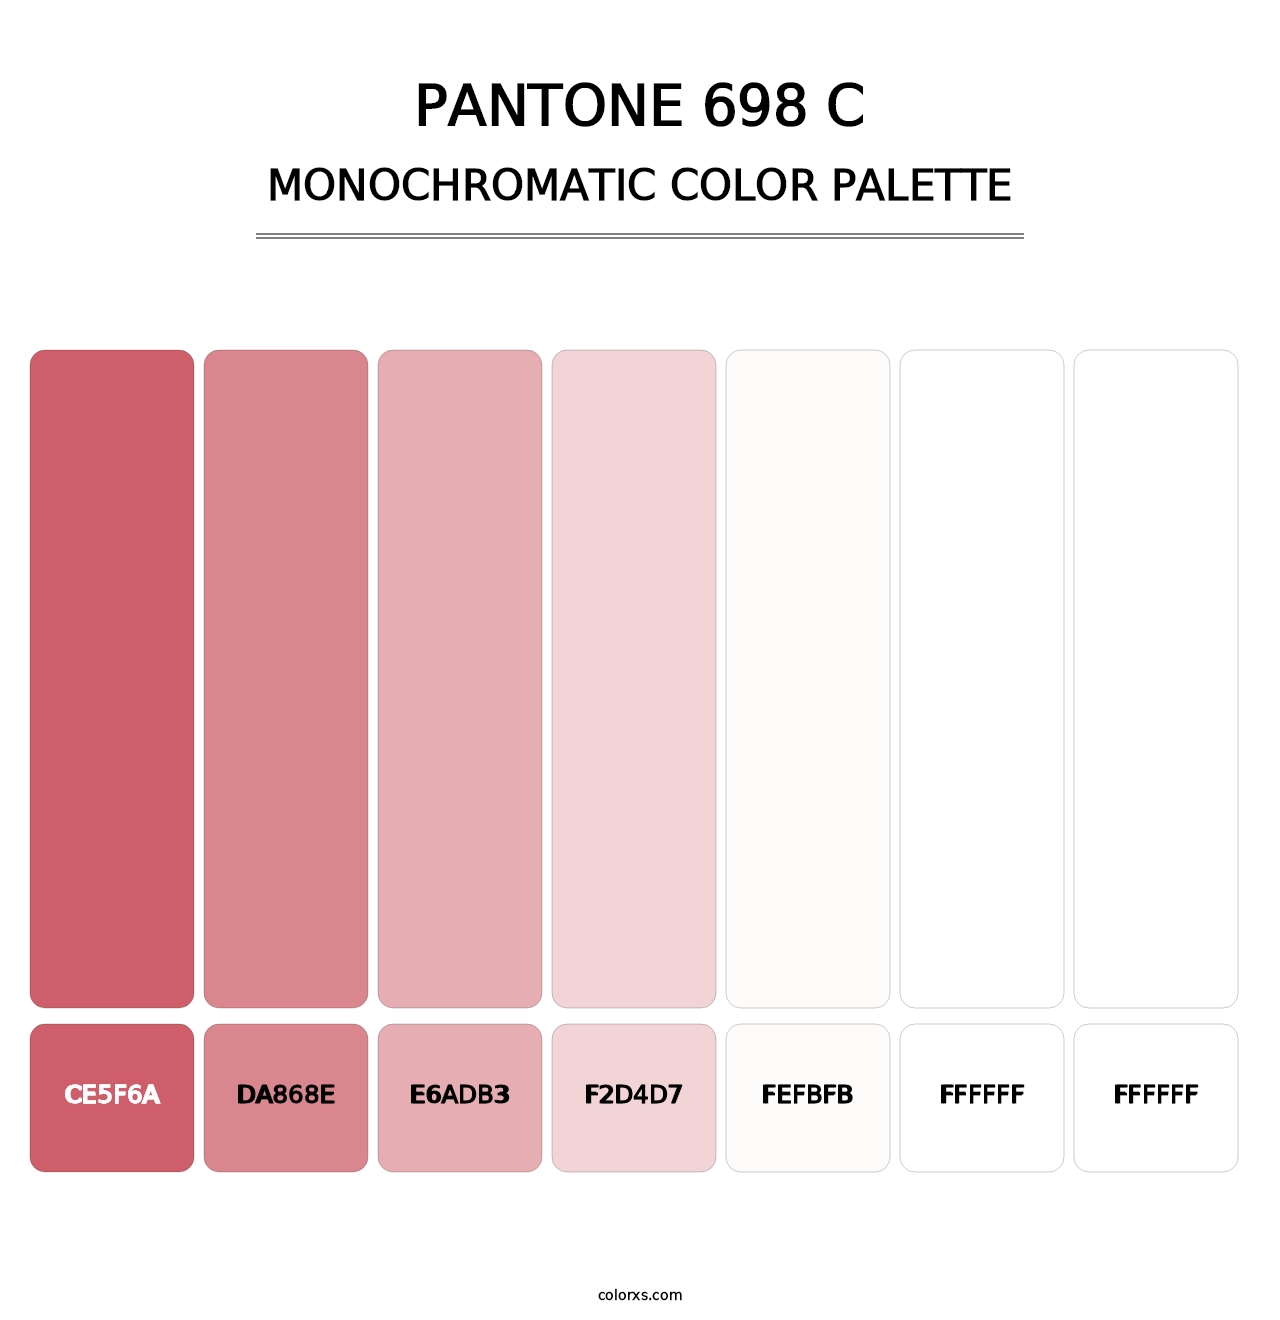 PANTONE 698 C - Monochromatic Color Palette